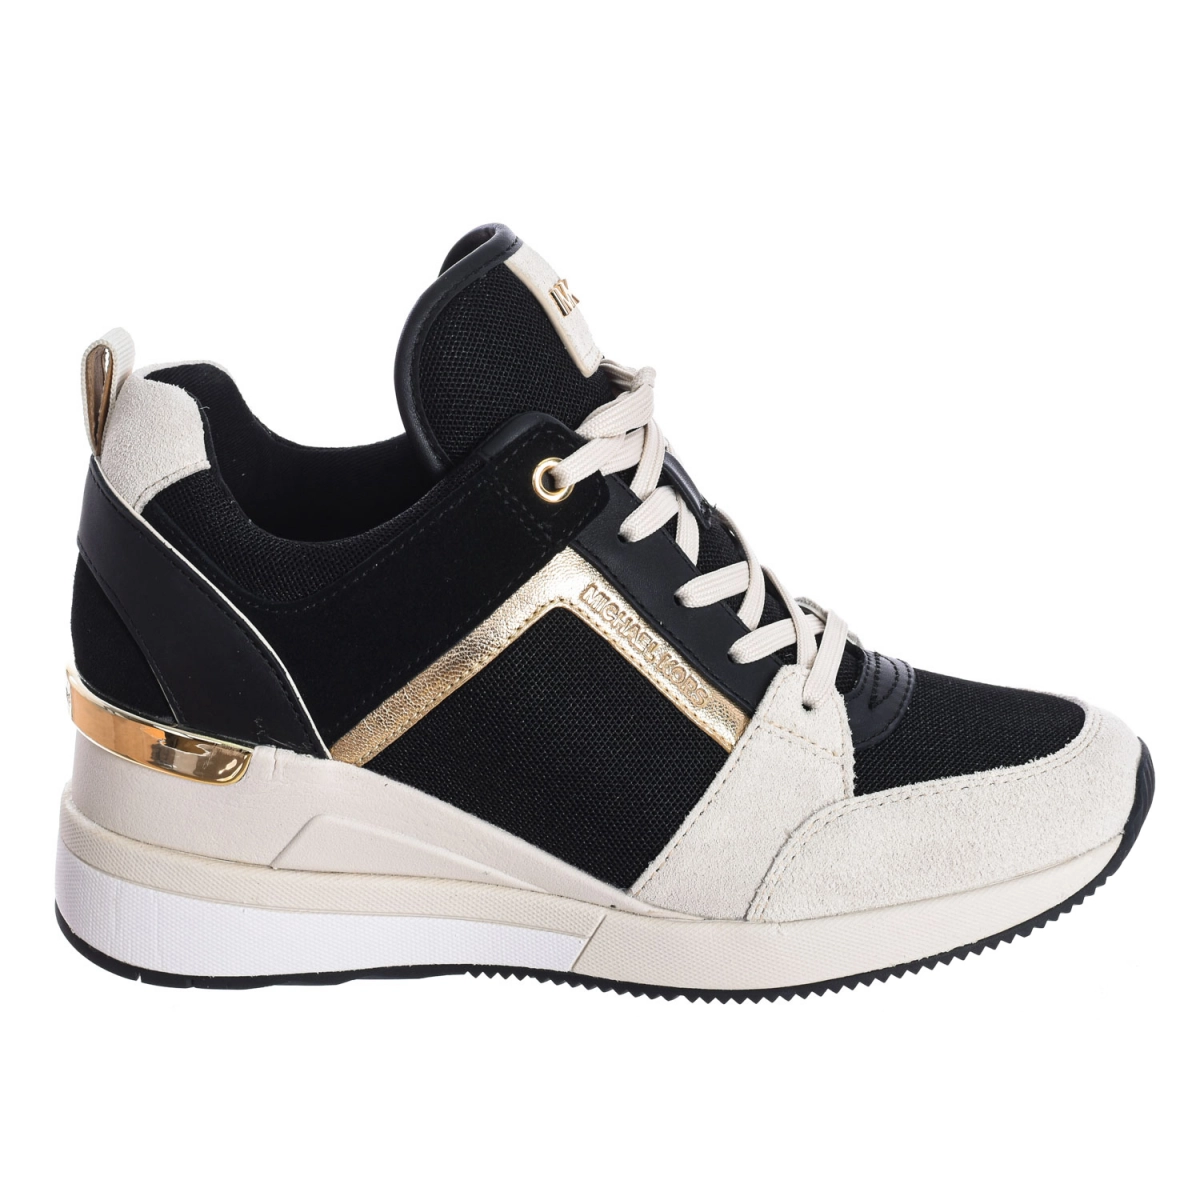 Zapatilla Sneaker Georgie tricolor Michael Kors R9GEFS1S mujer Talla: 36.5 Color: Negro R9GEFS1S-LT-CRM-MULTI.36.5